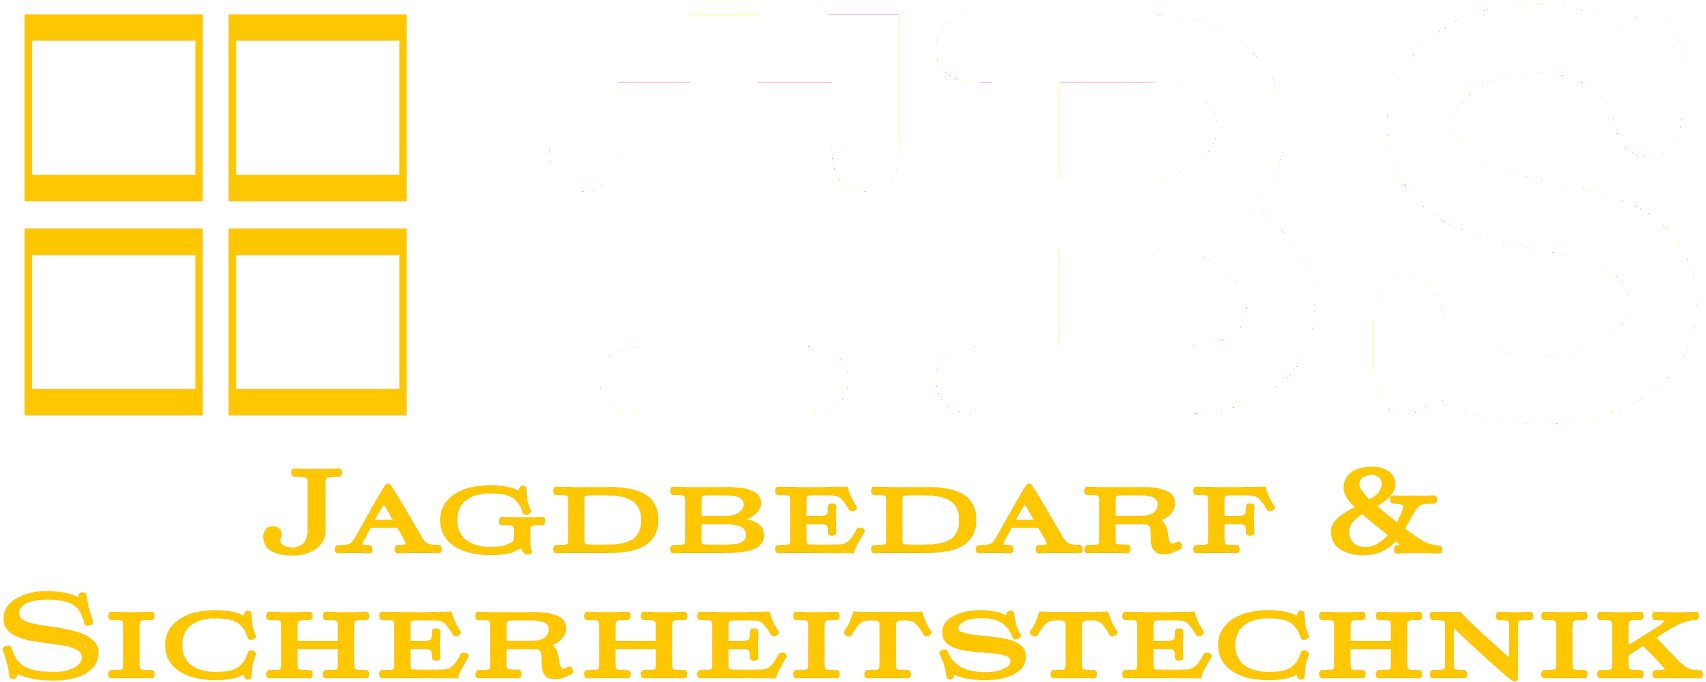 TBS Jagdbedarf und Sicherheitstechnik-Logo